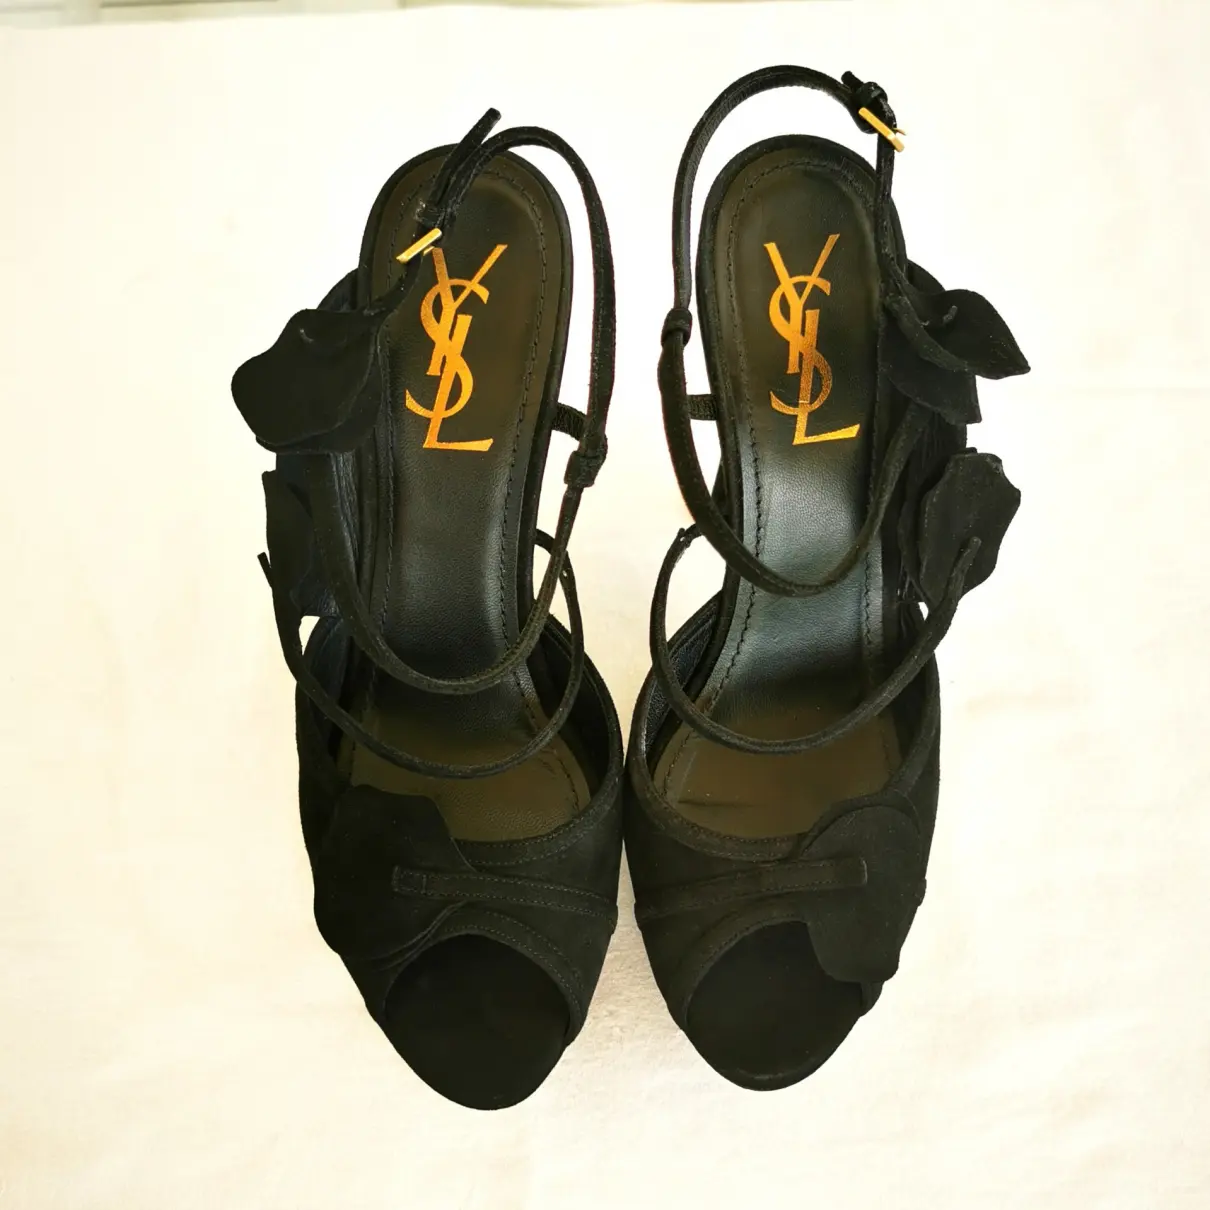 Buy Yves Saint Laurent Heels online - Vintage